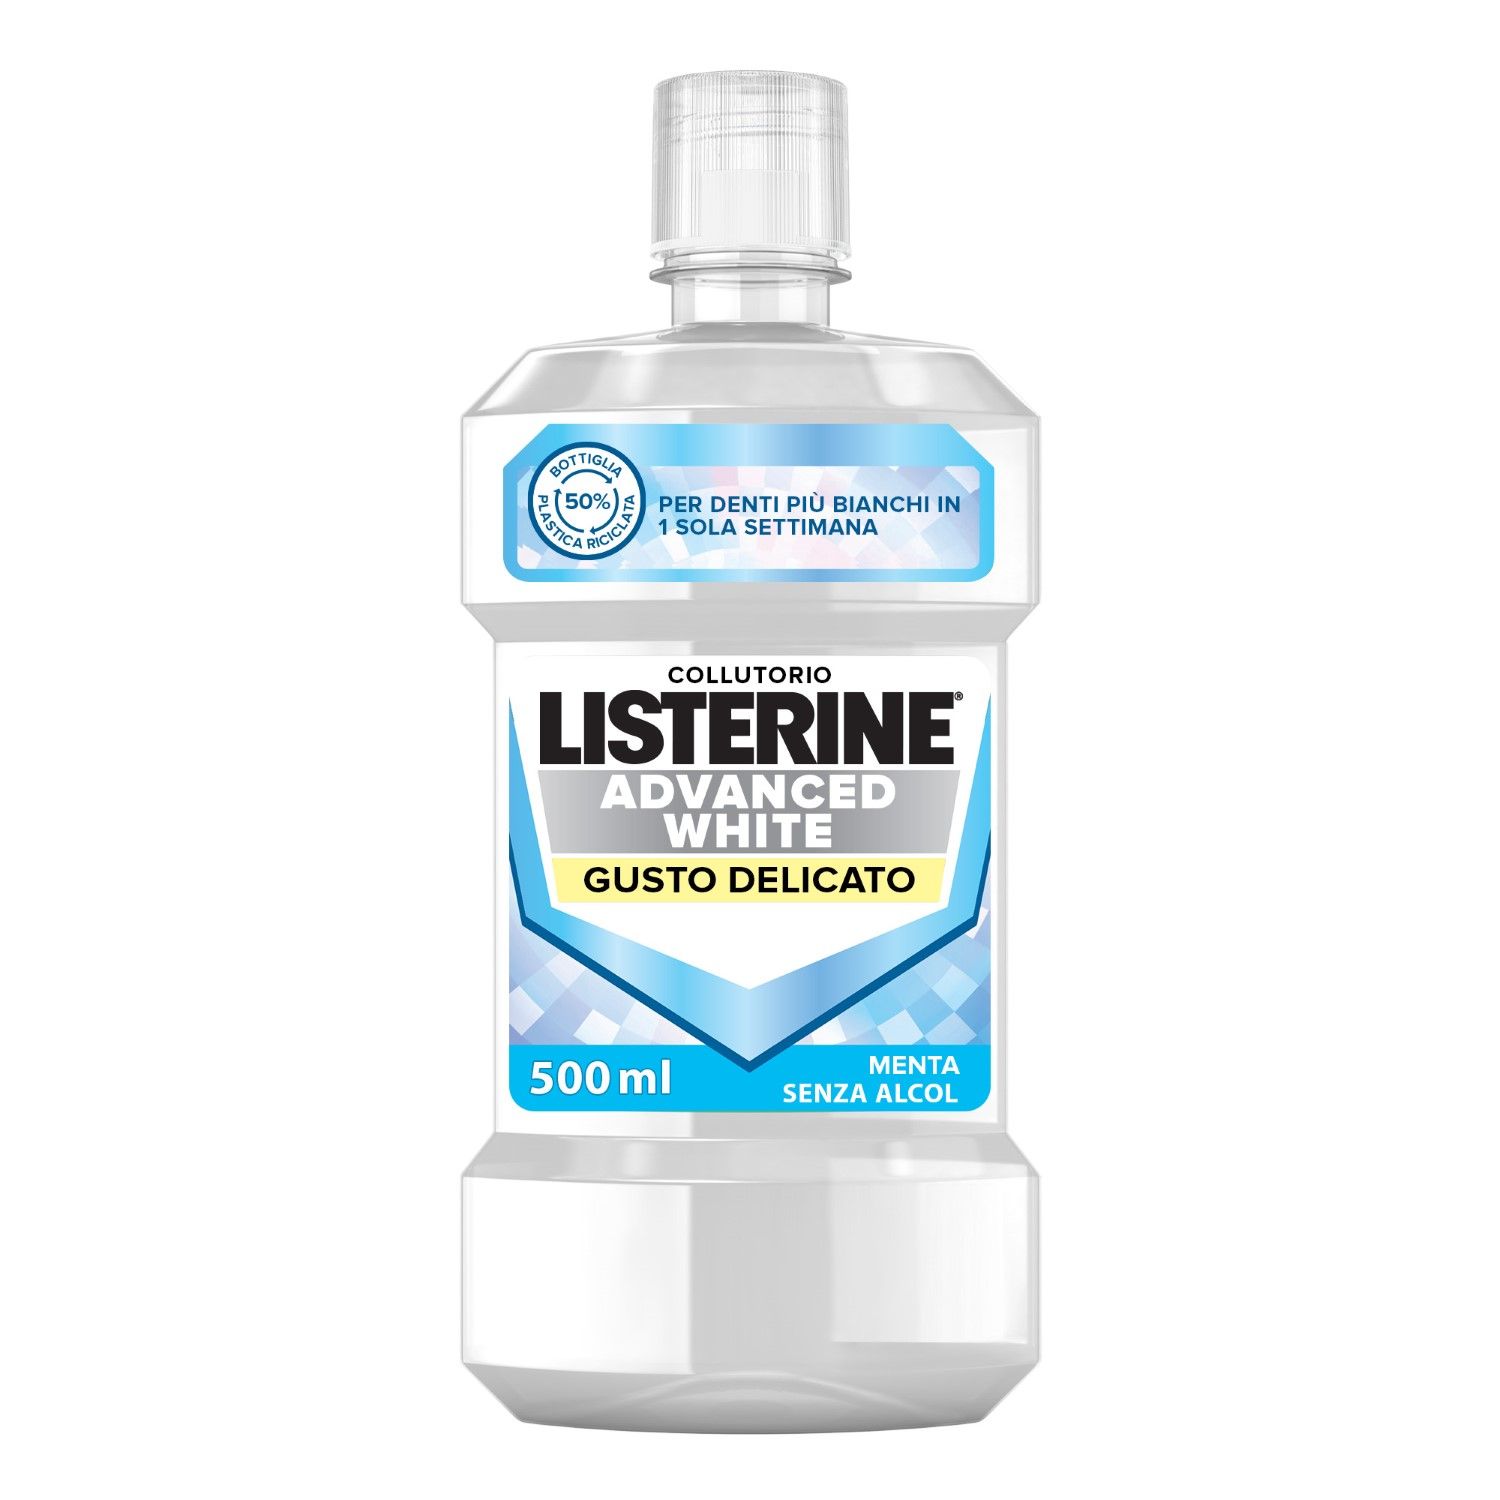 Listerine Advanced White Collutorio Gusto Delicato 500ml